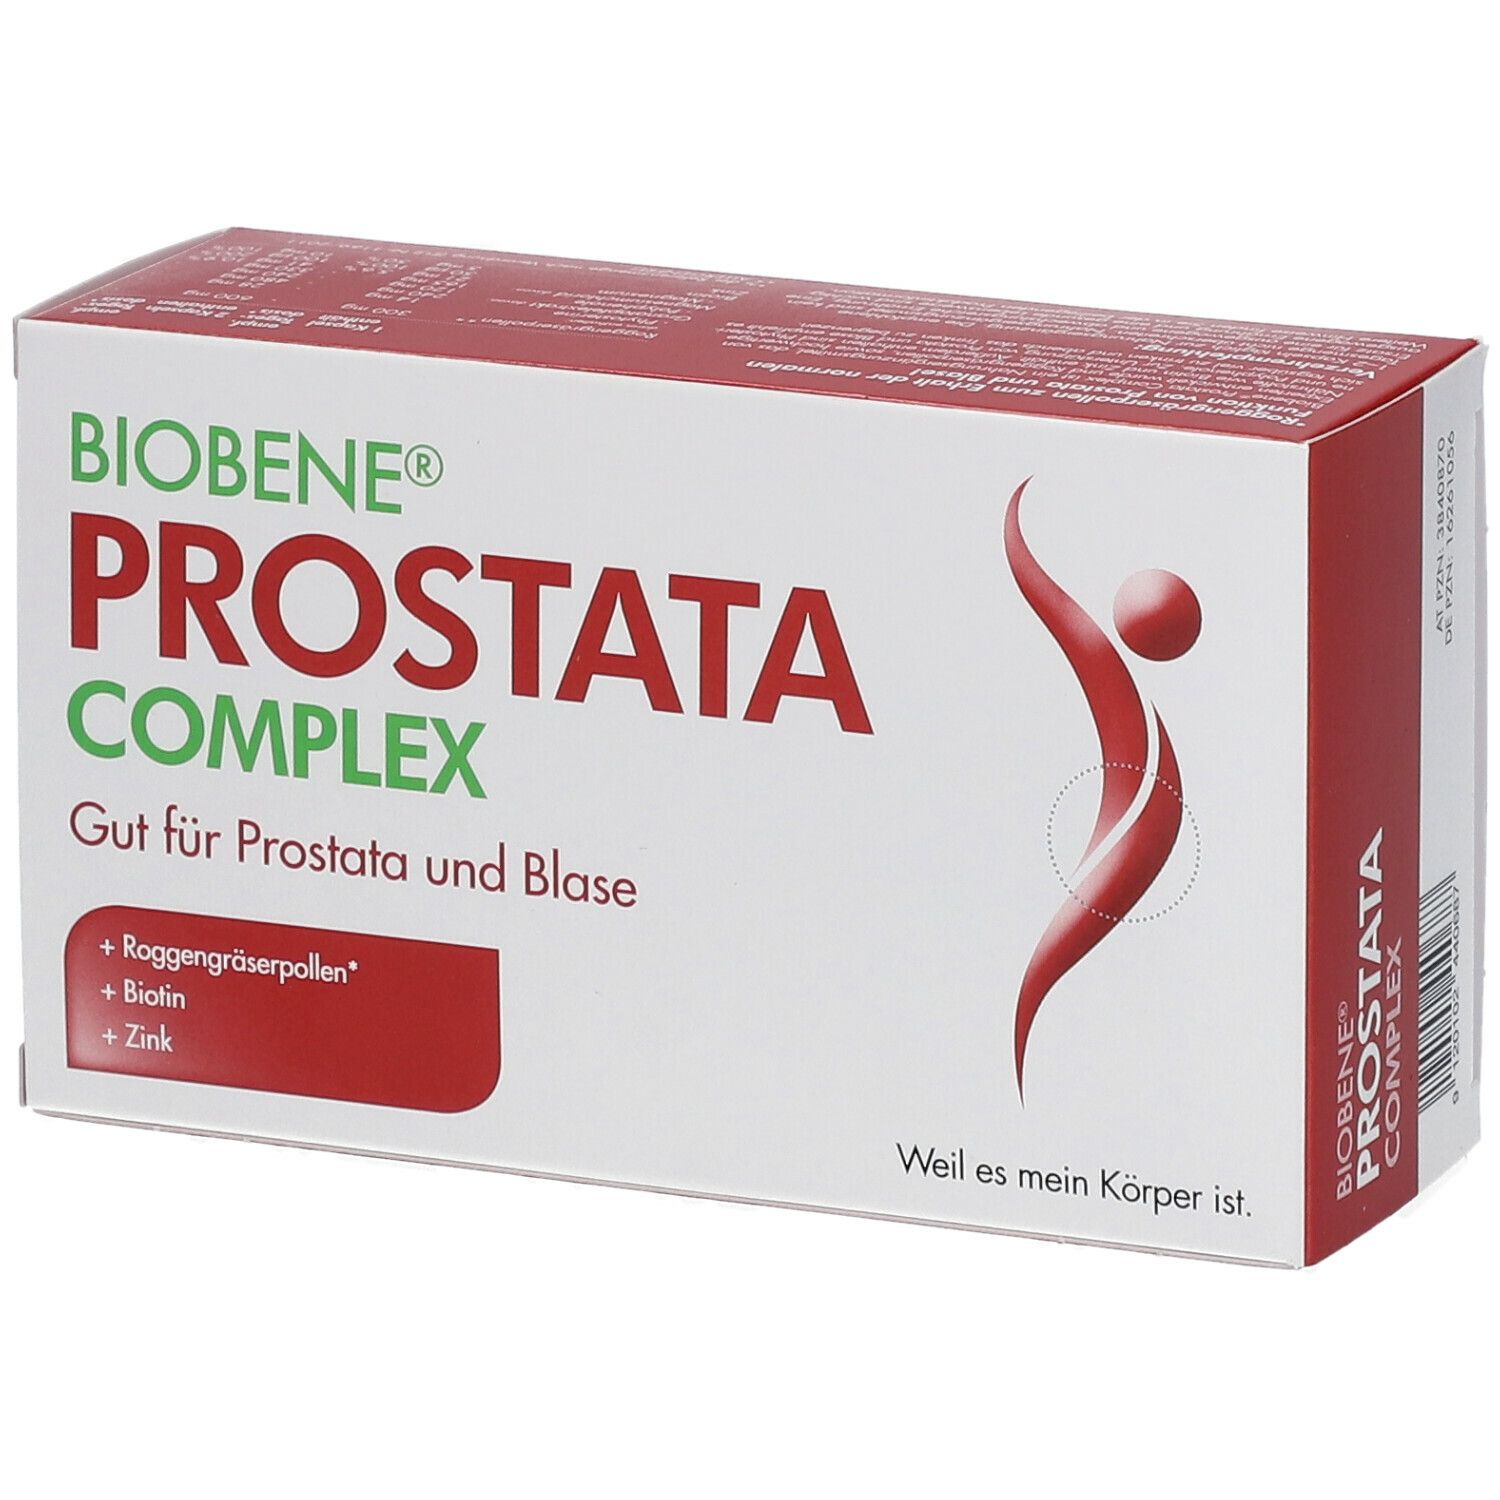 BIOBENE® Prostata Complex